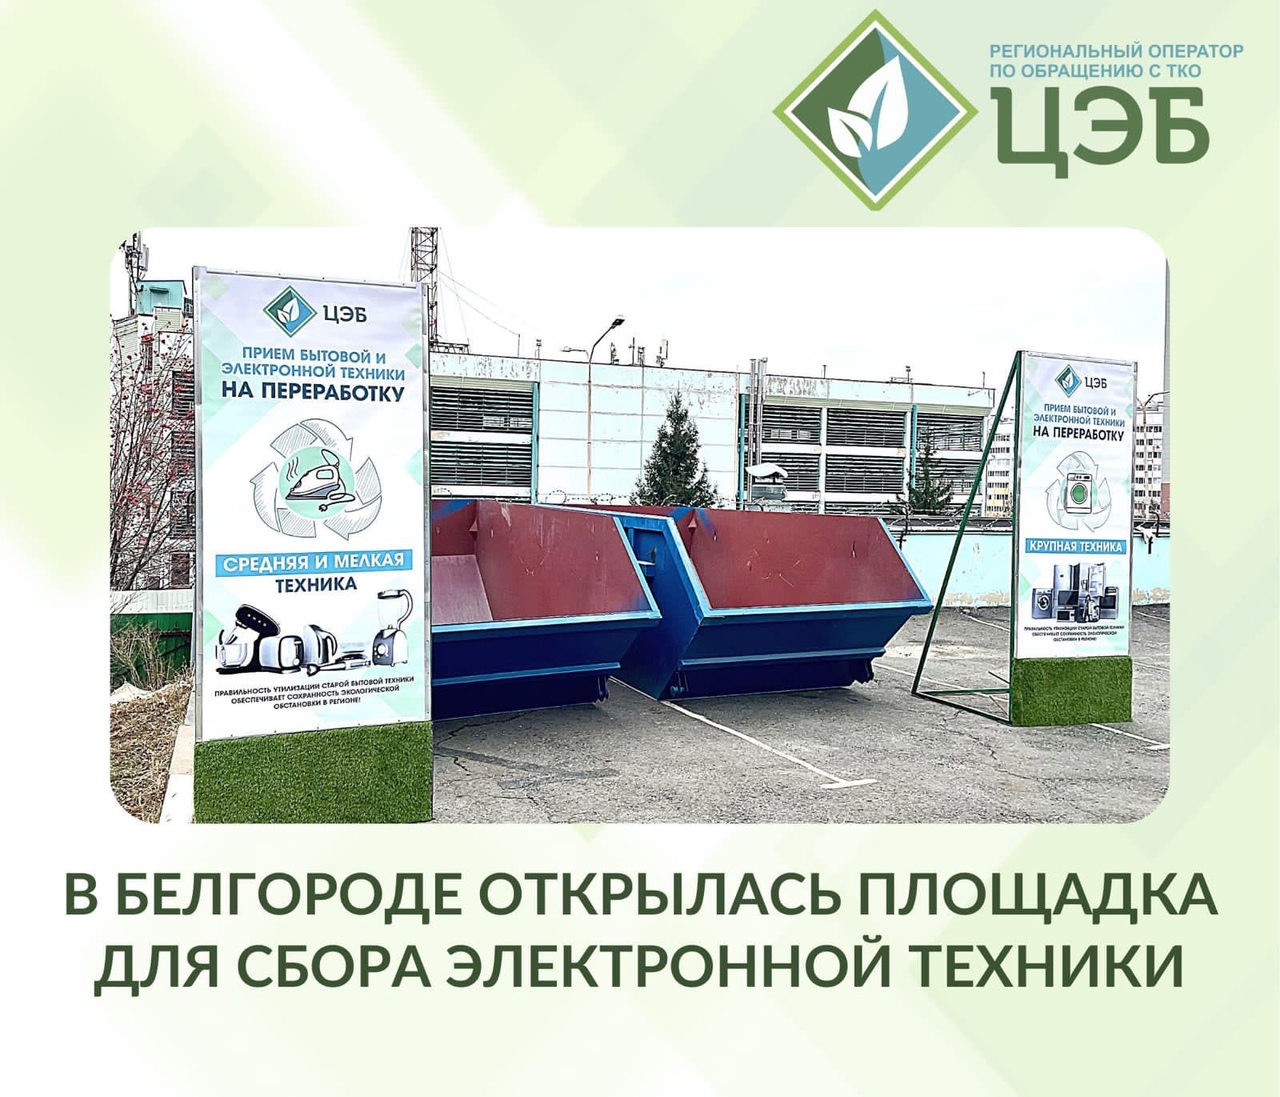 В Белгороде появилась площадка для сбора и утилизации электротехники